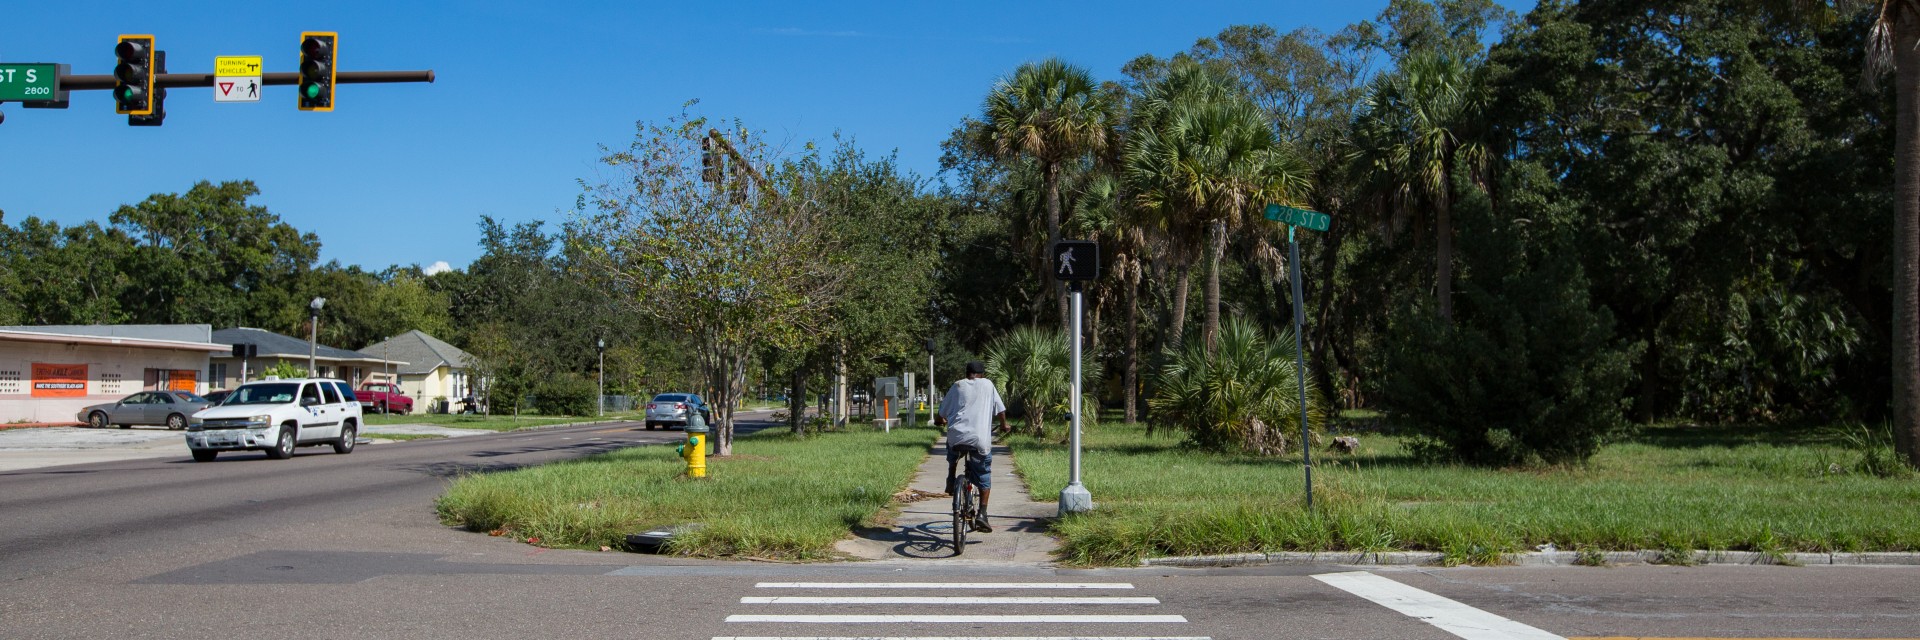 bicyclist on sidewalk